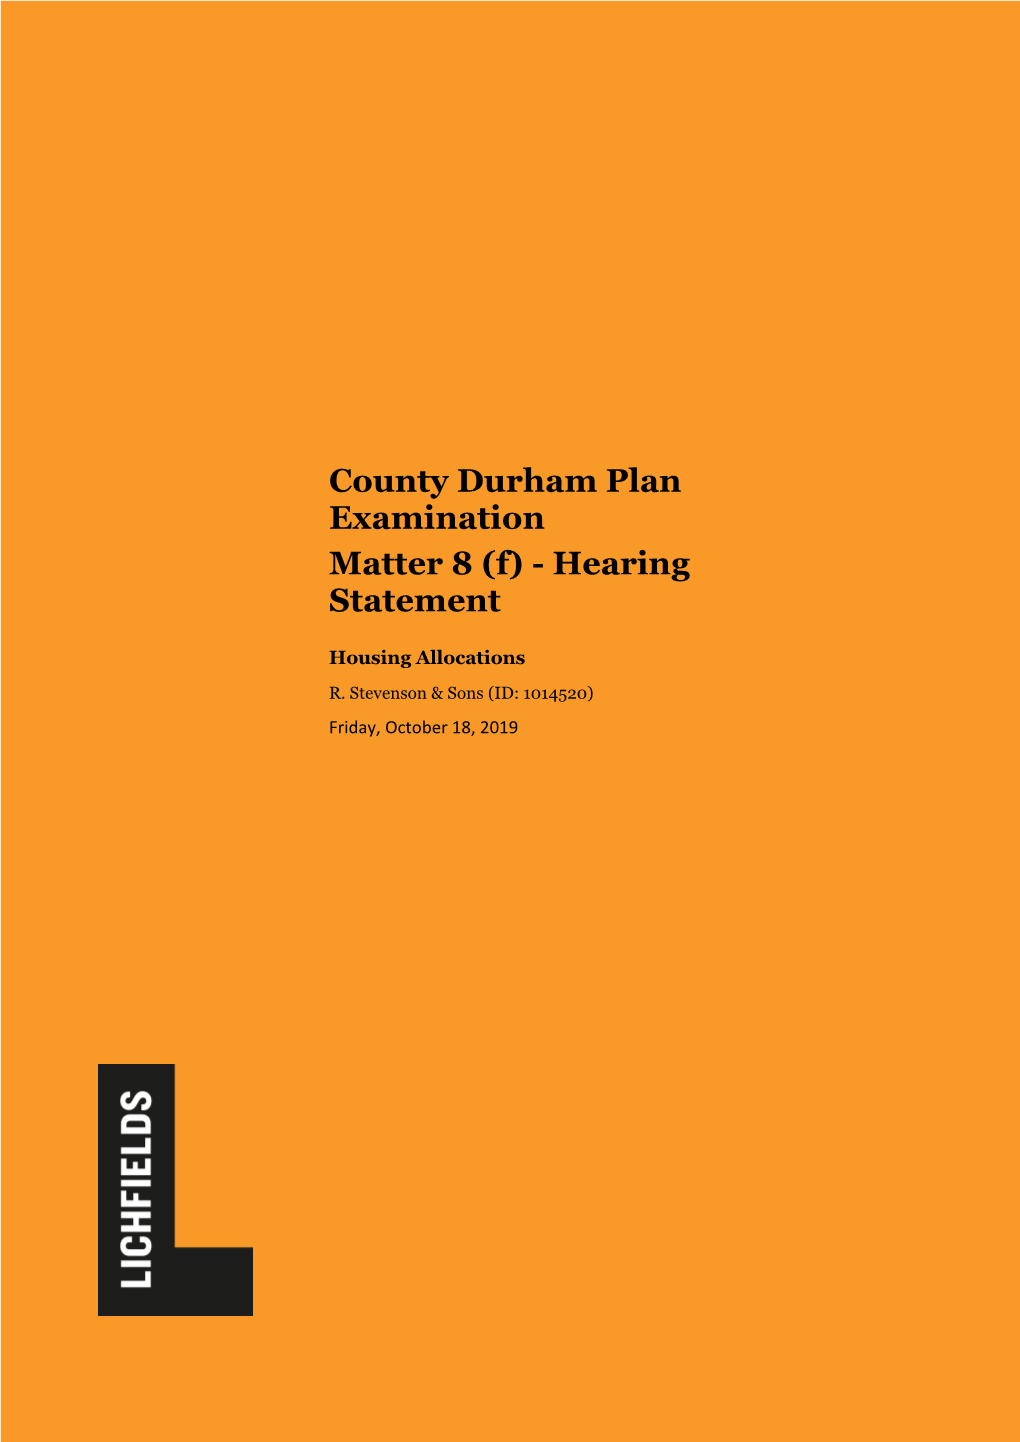 County Durham Plan Examination Matter 8 (F) - Hearing Statement